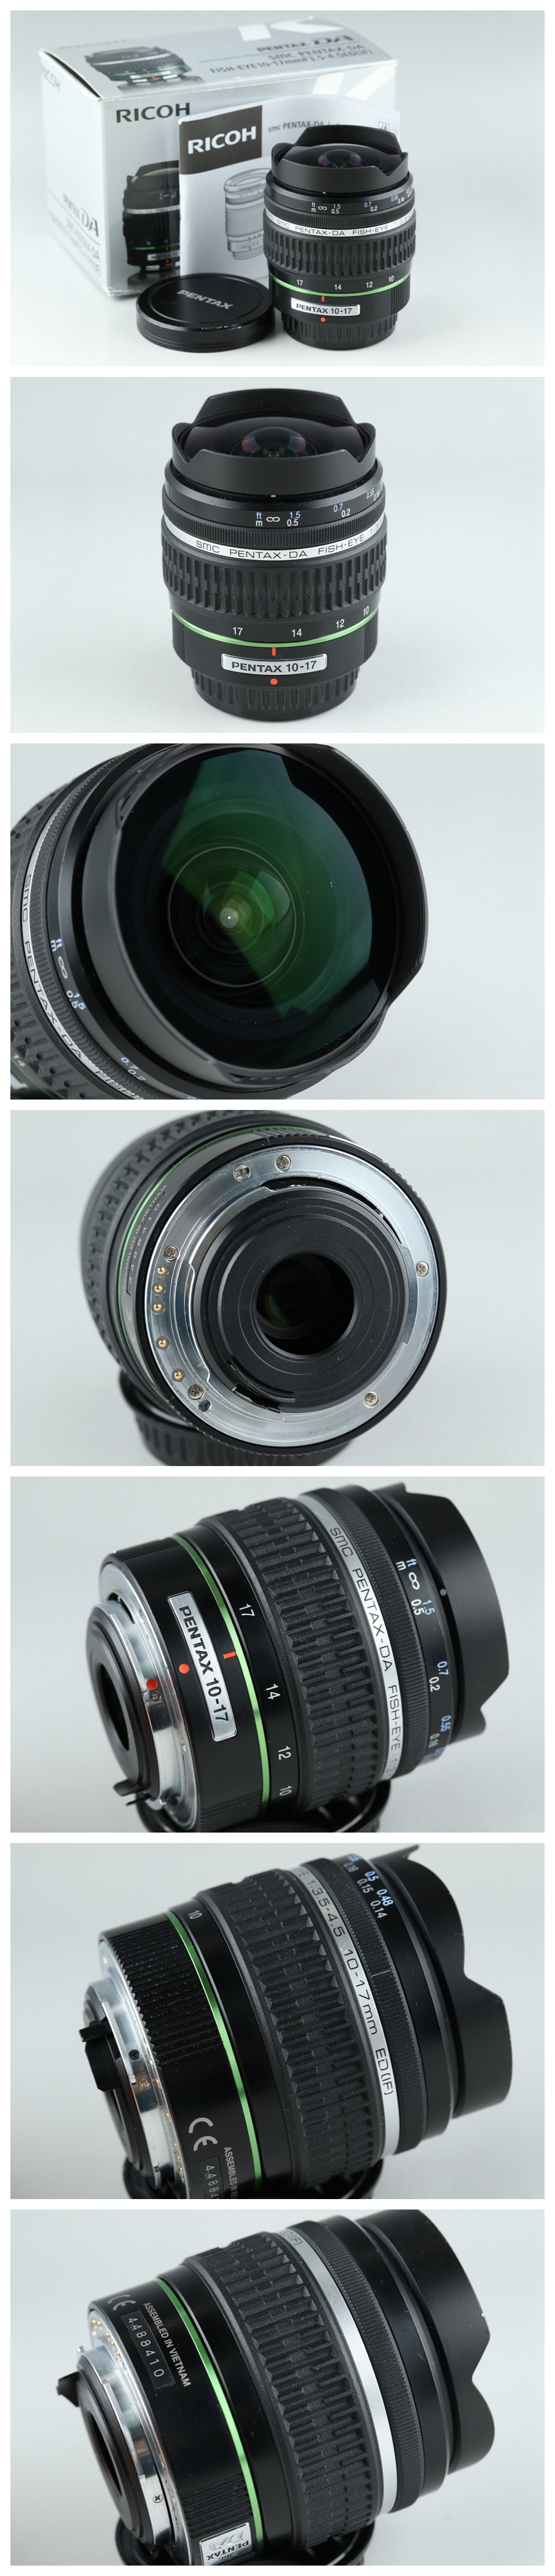 Smc Pentax Da Fish Eye 10 17mm F 3 5 4 5 Ed If Lens For Pentax K 138f1 Ebay